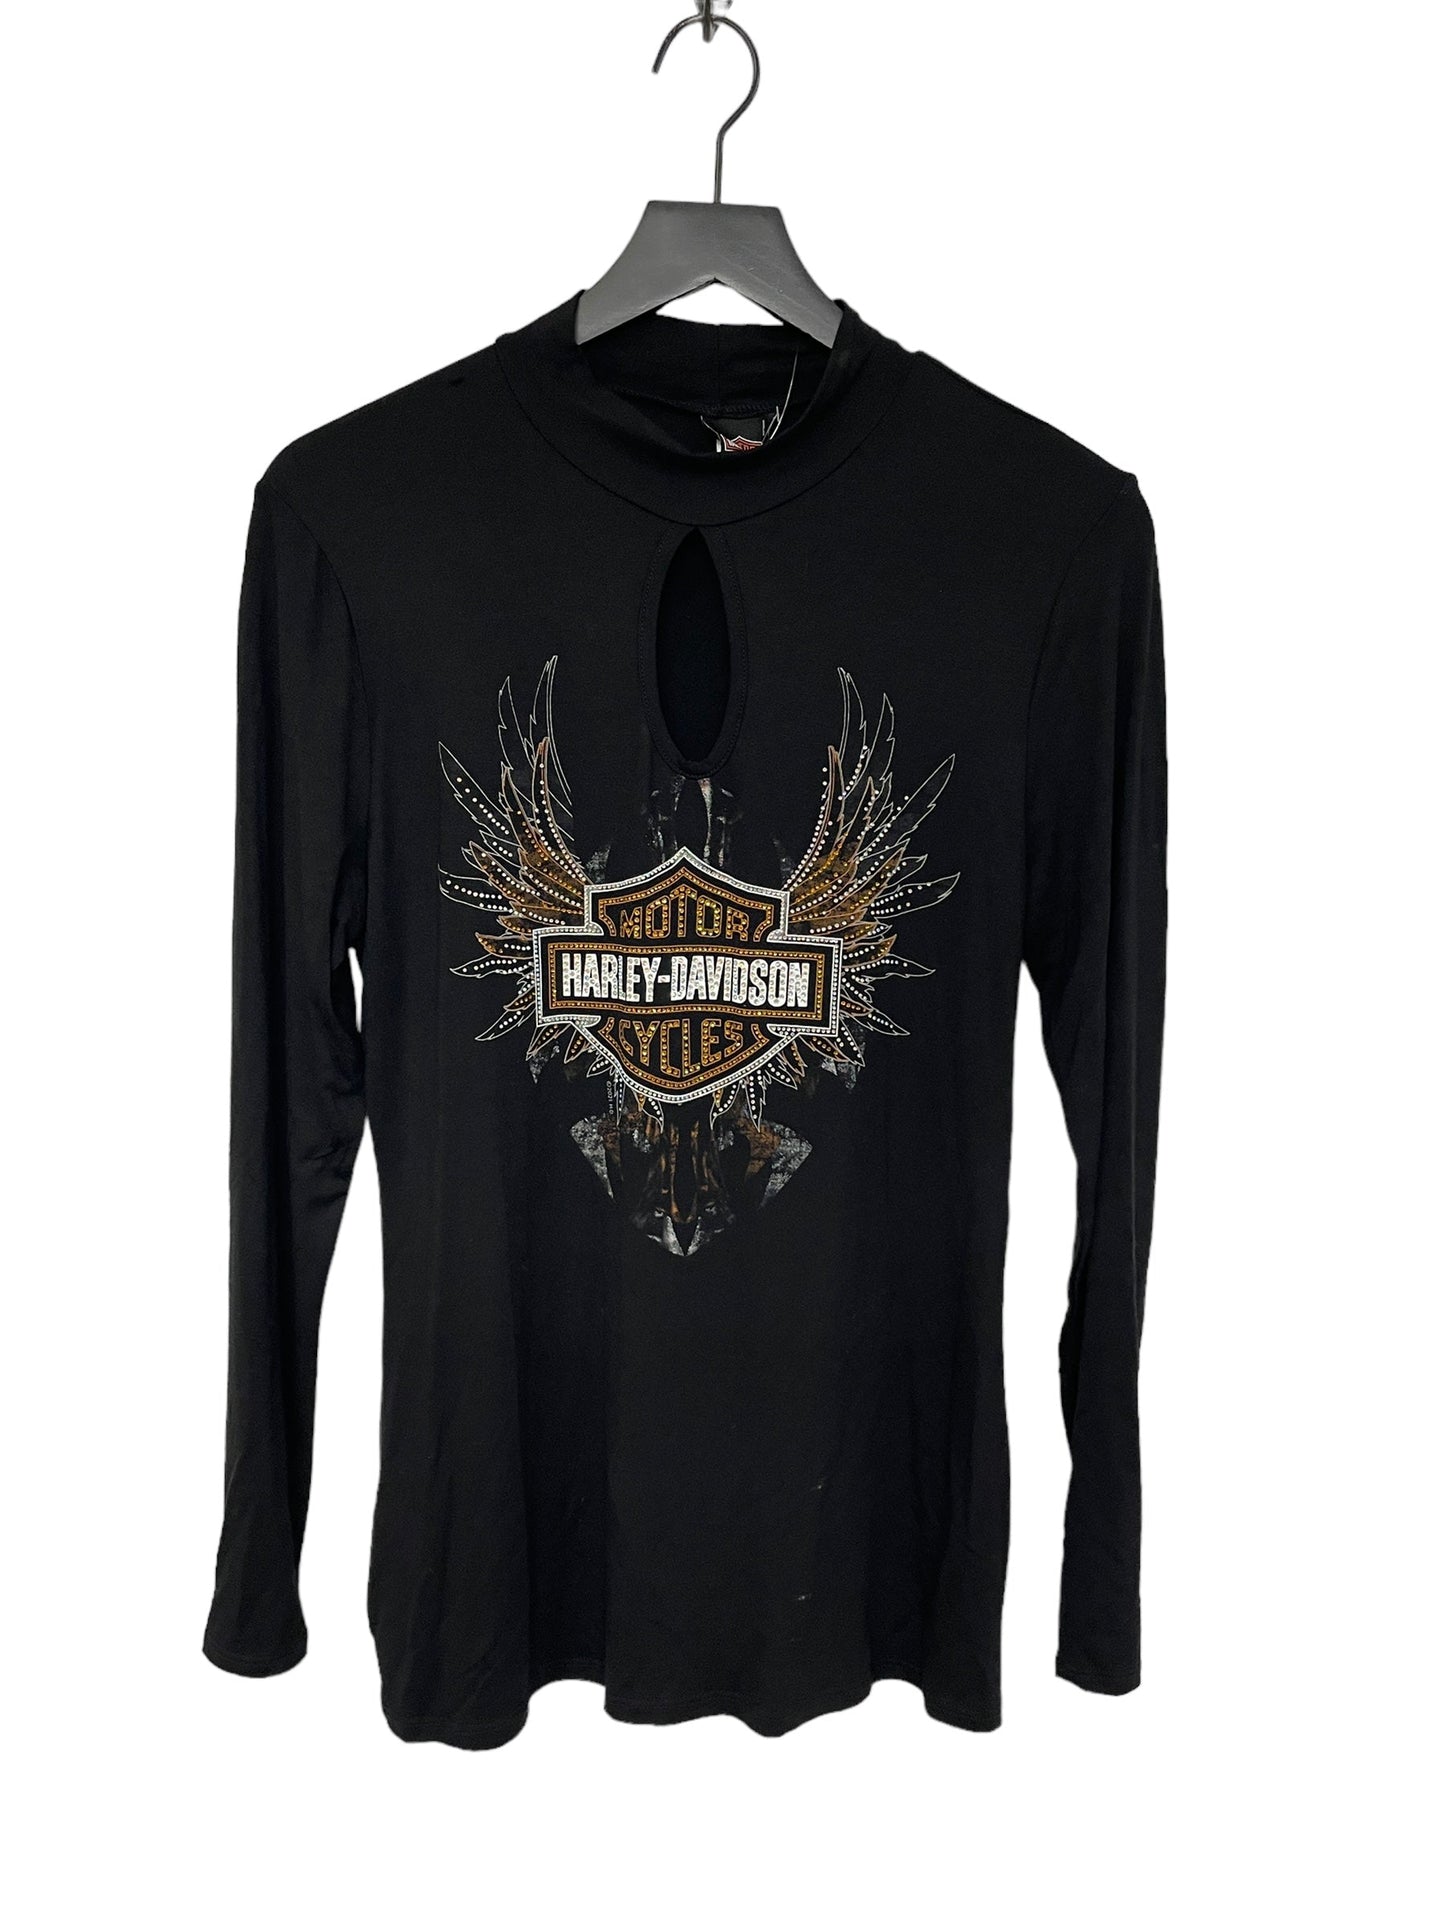 Black Top Long Sleeve Harley Davidson, Size L